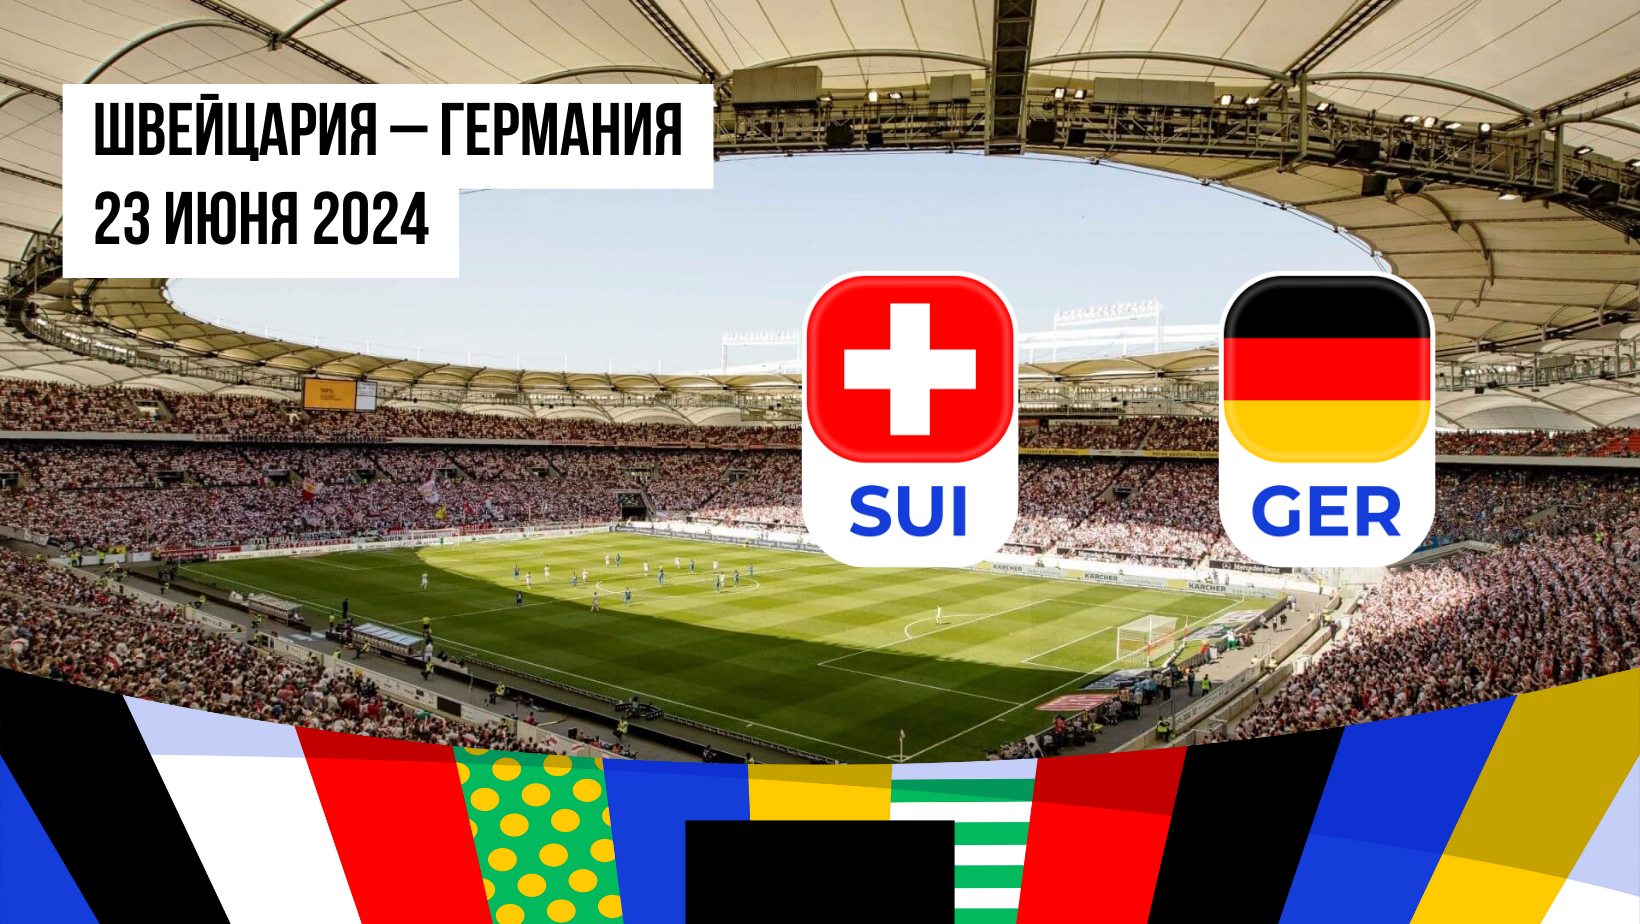 Швейцария – Германия: ставки и коэффициенты на матч Евро-2024 — 23 июня